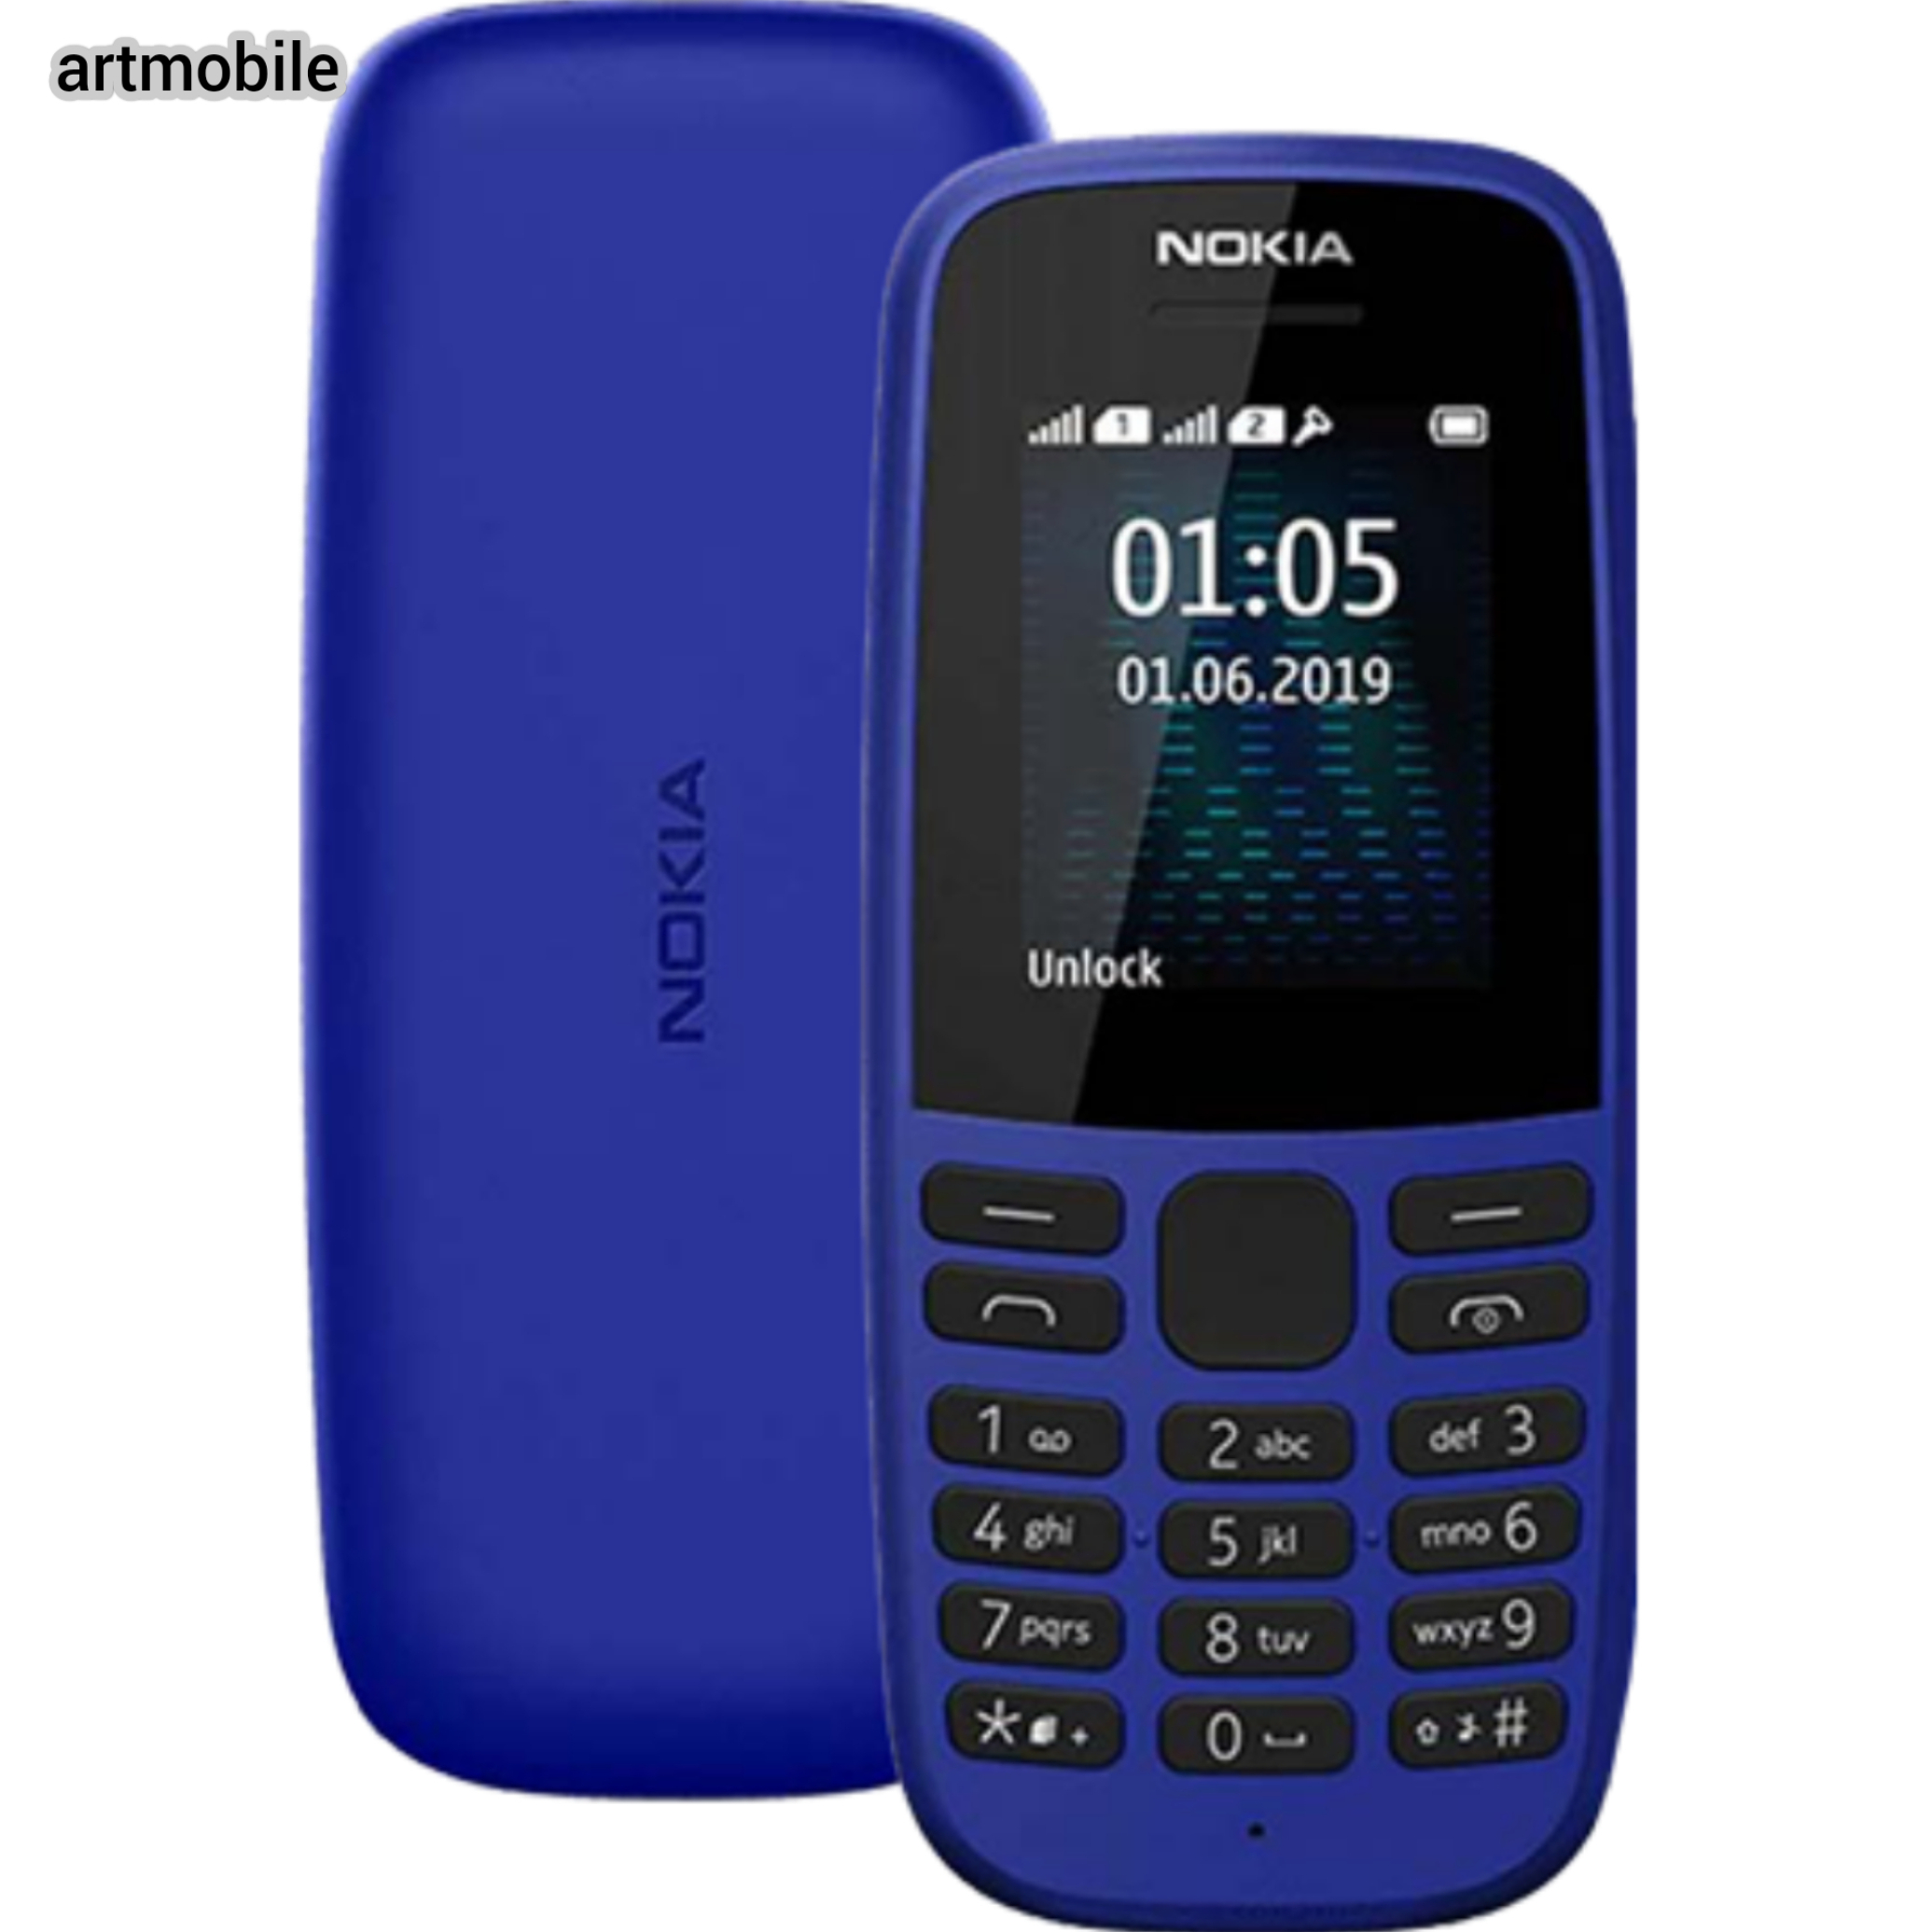 گوشی موبایل نوکیا مدل Nokia 105-2019 دو سیم کارت باگارانتی